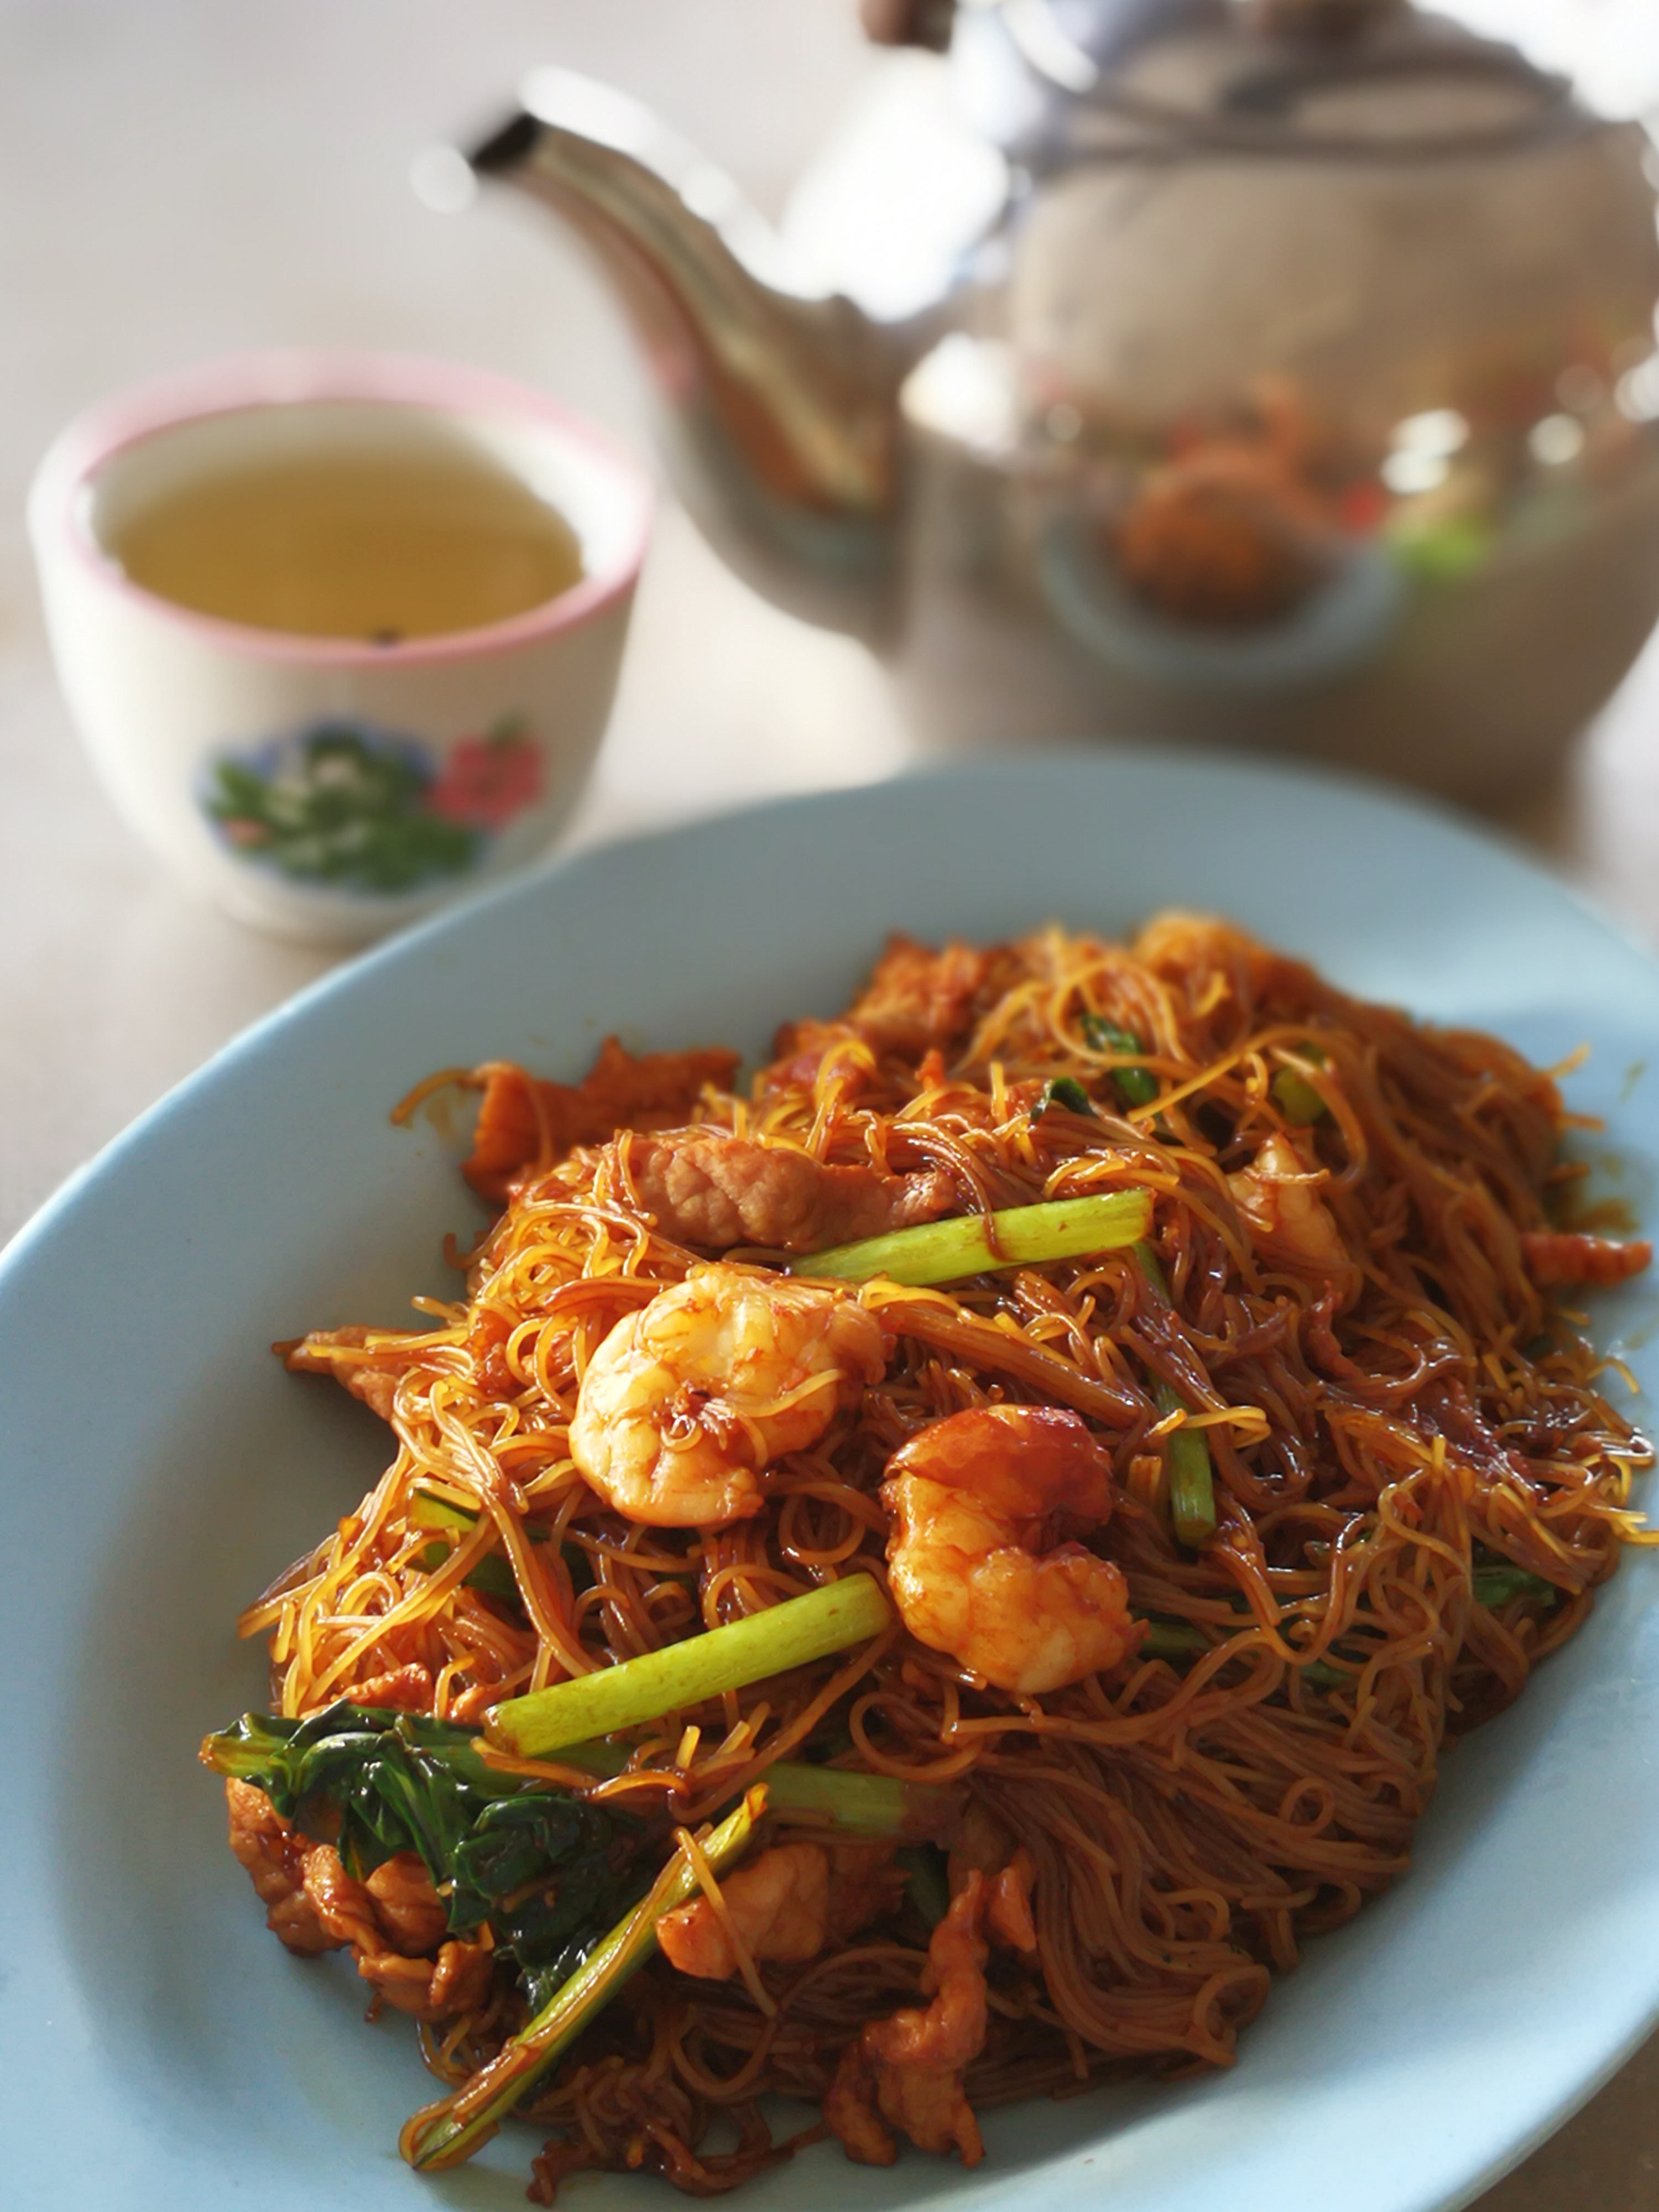 ハイナン焼きビーフン【海南米粉】 Hainam Fried Bee hoon / Fride Rice Noodle Hainam style